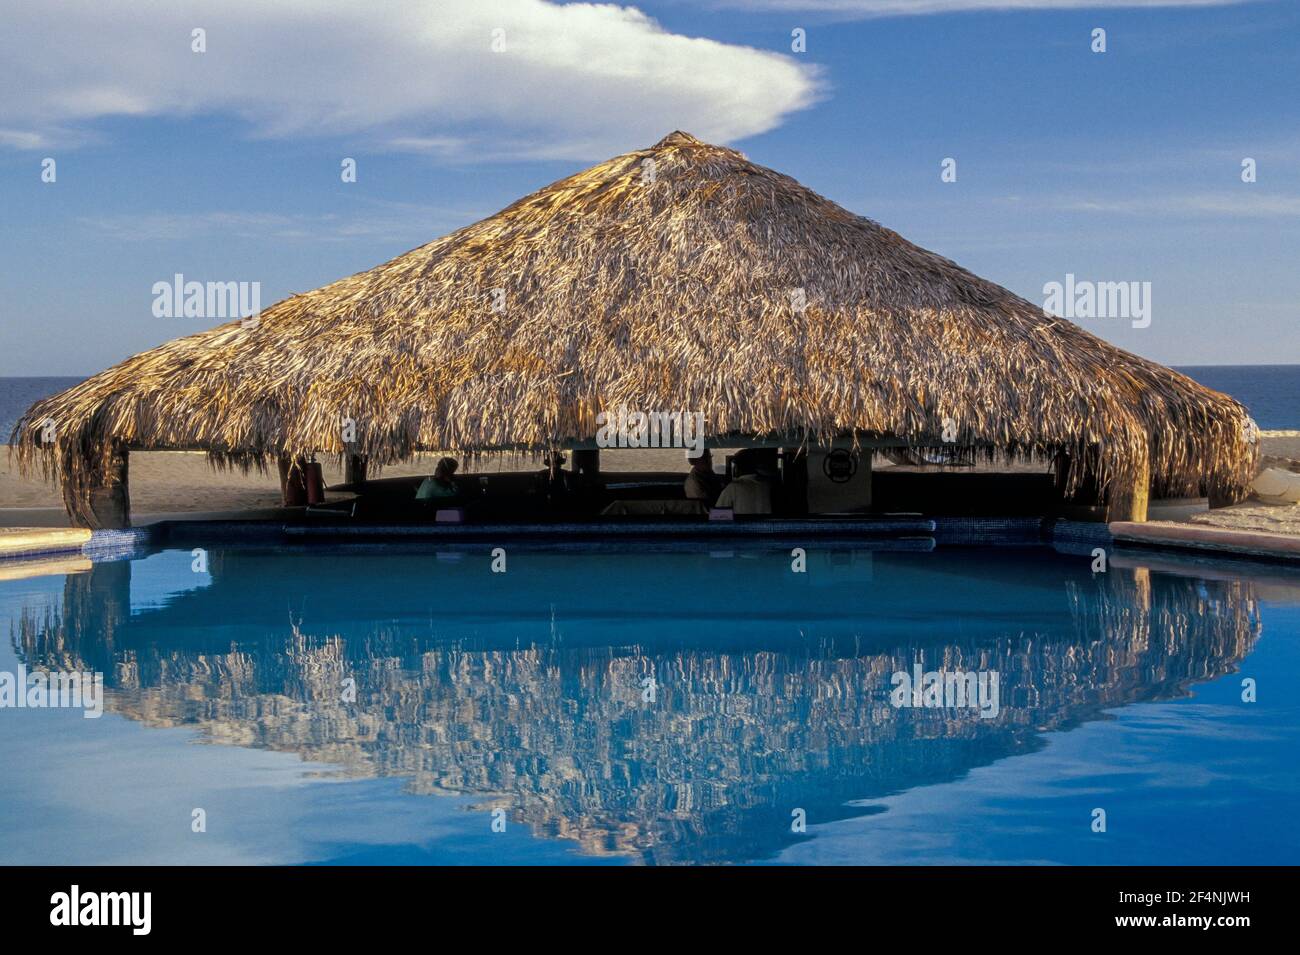 Palapa se reflète dans la piscine, Cabo San Lucas, Baja California sur, Mexique Banque D'Images